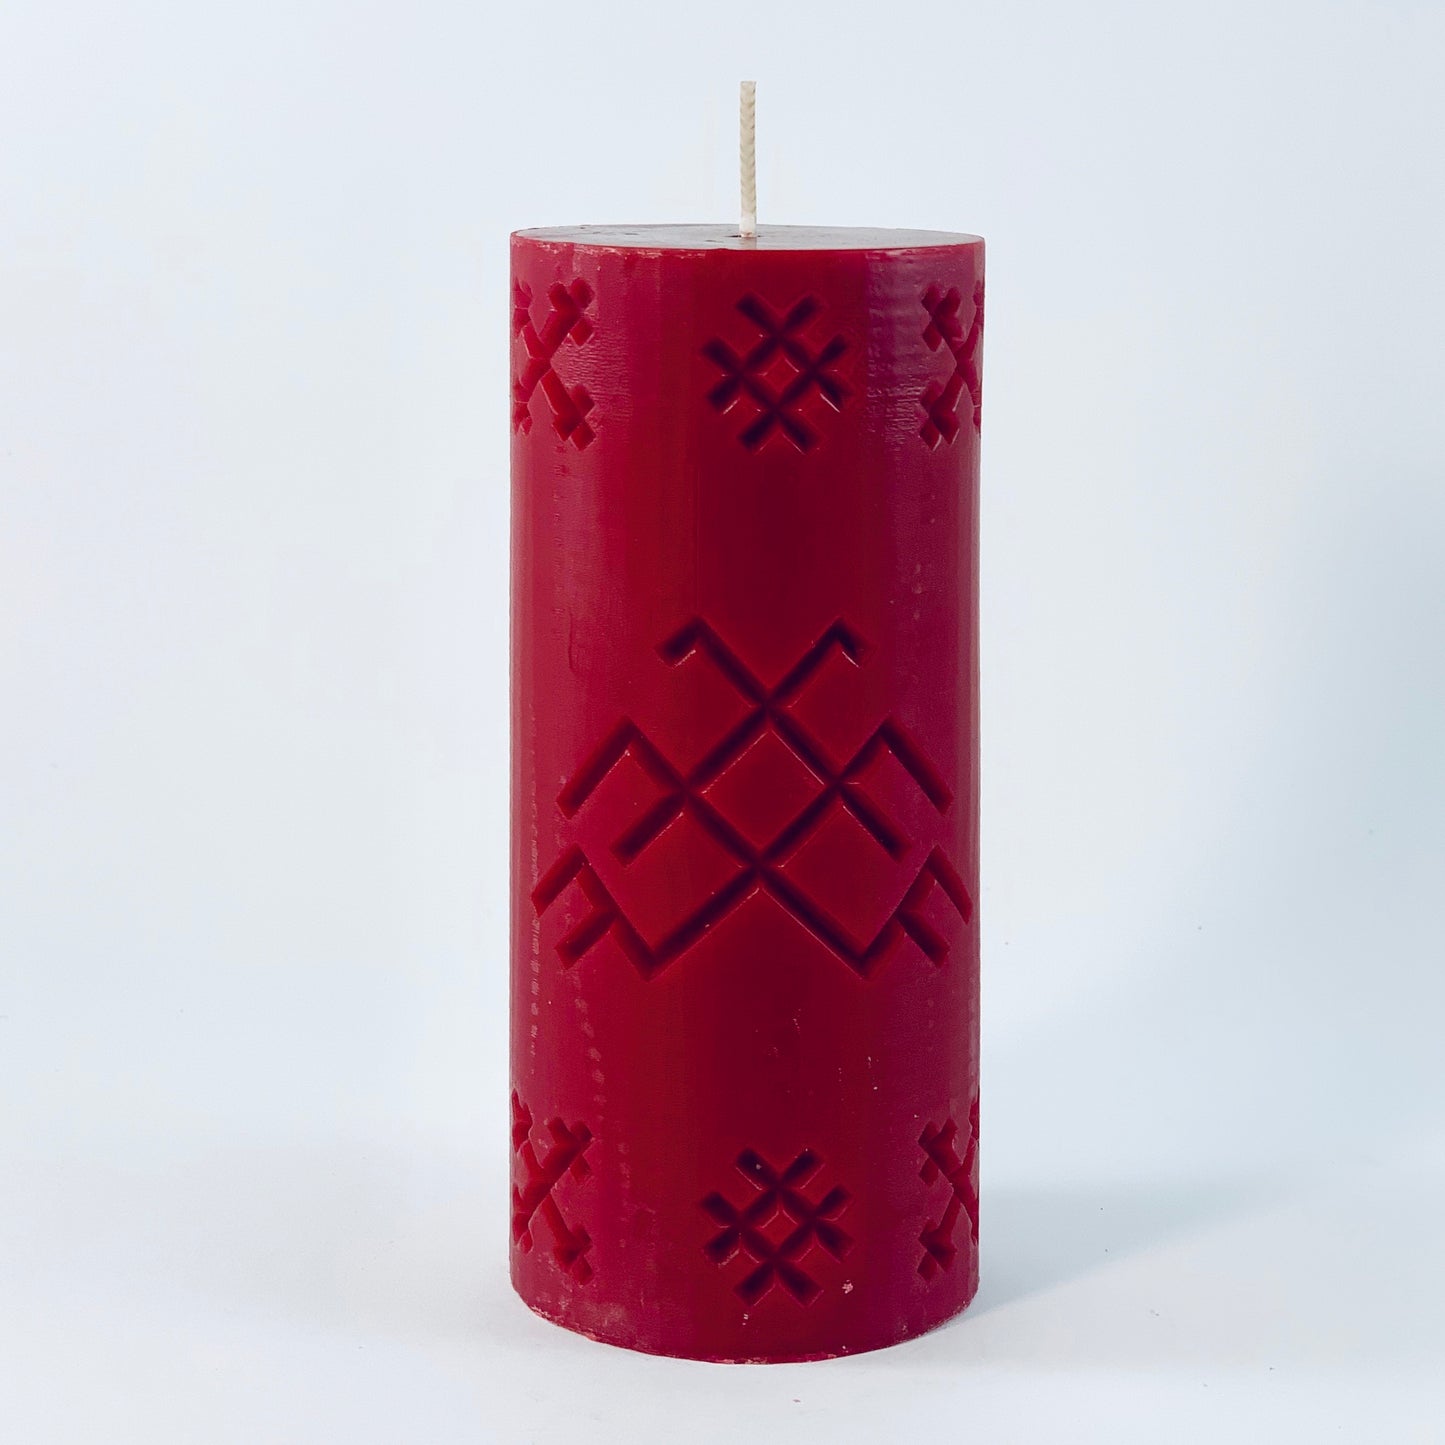 Sojas vaska svece ar latvju rakstu zīmi “JUMIS", bordo